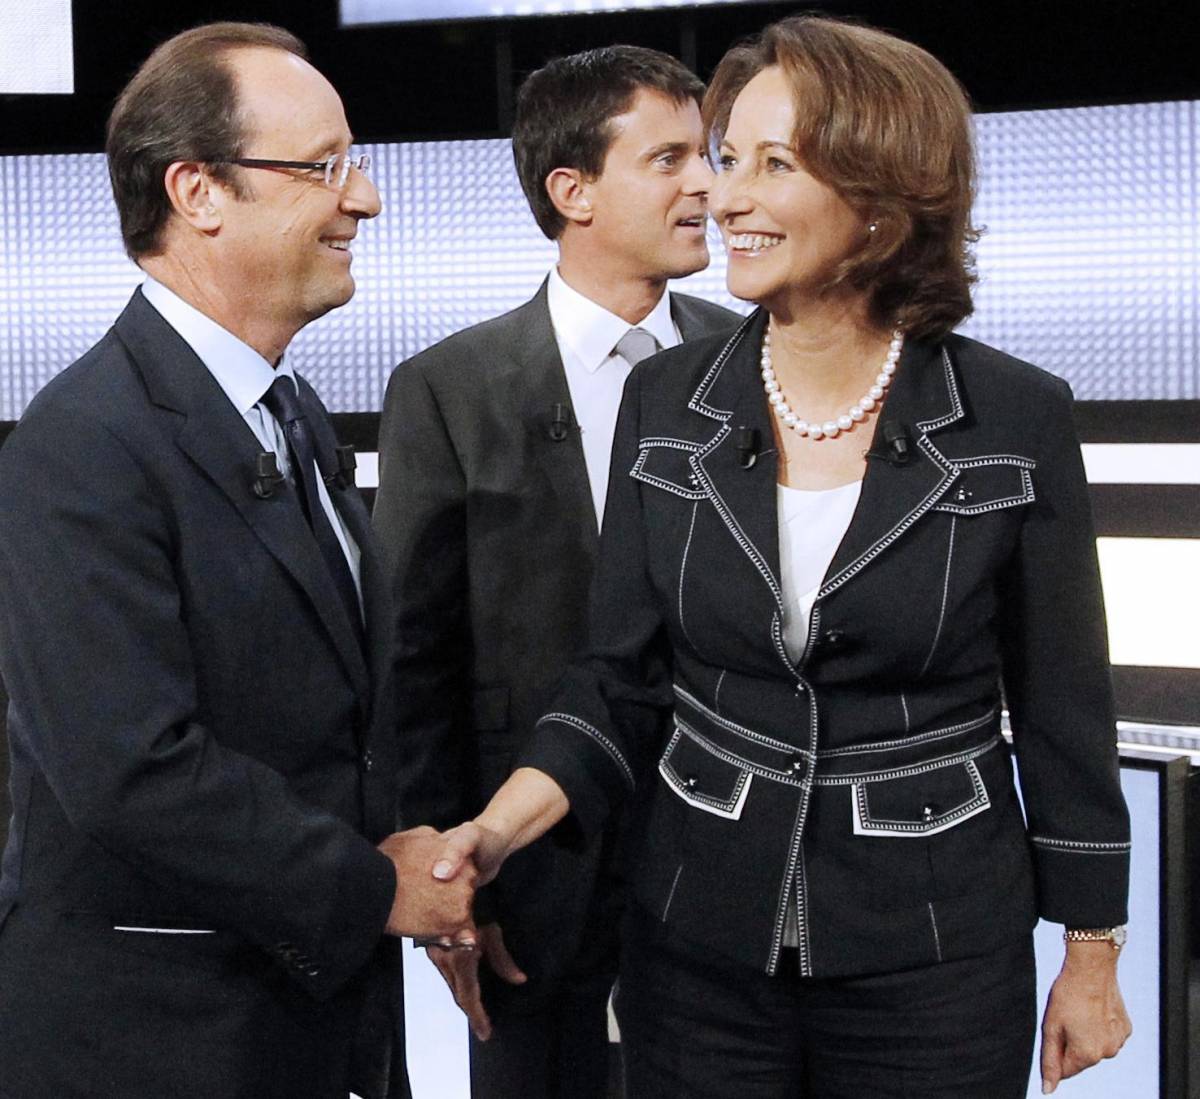 Hollande si fa difendere dall'ex Ma gli crede un francese su 10